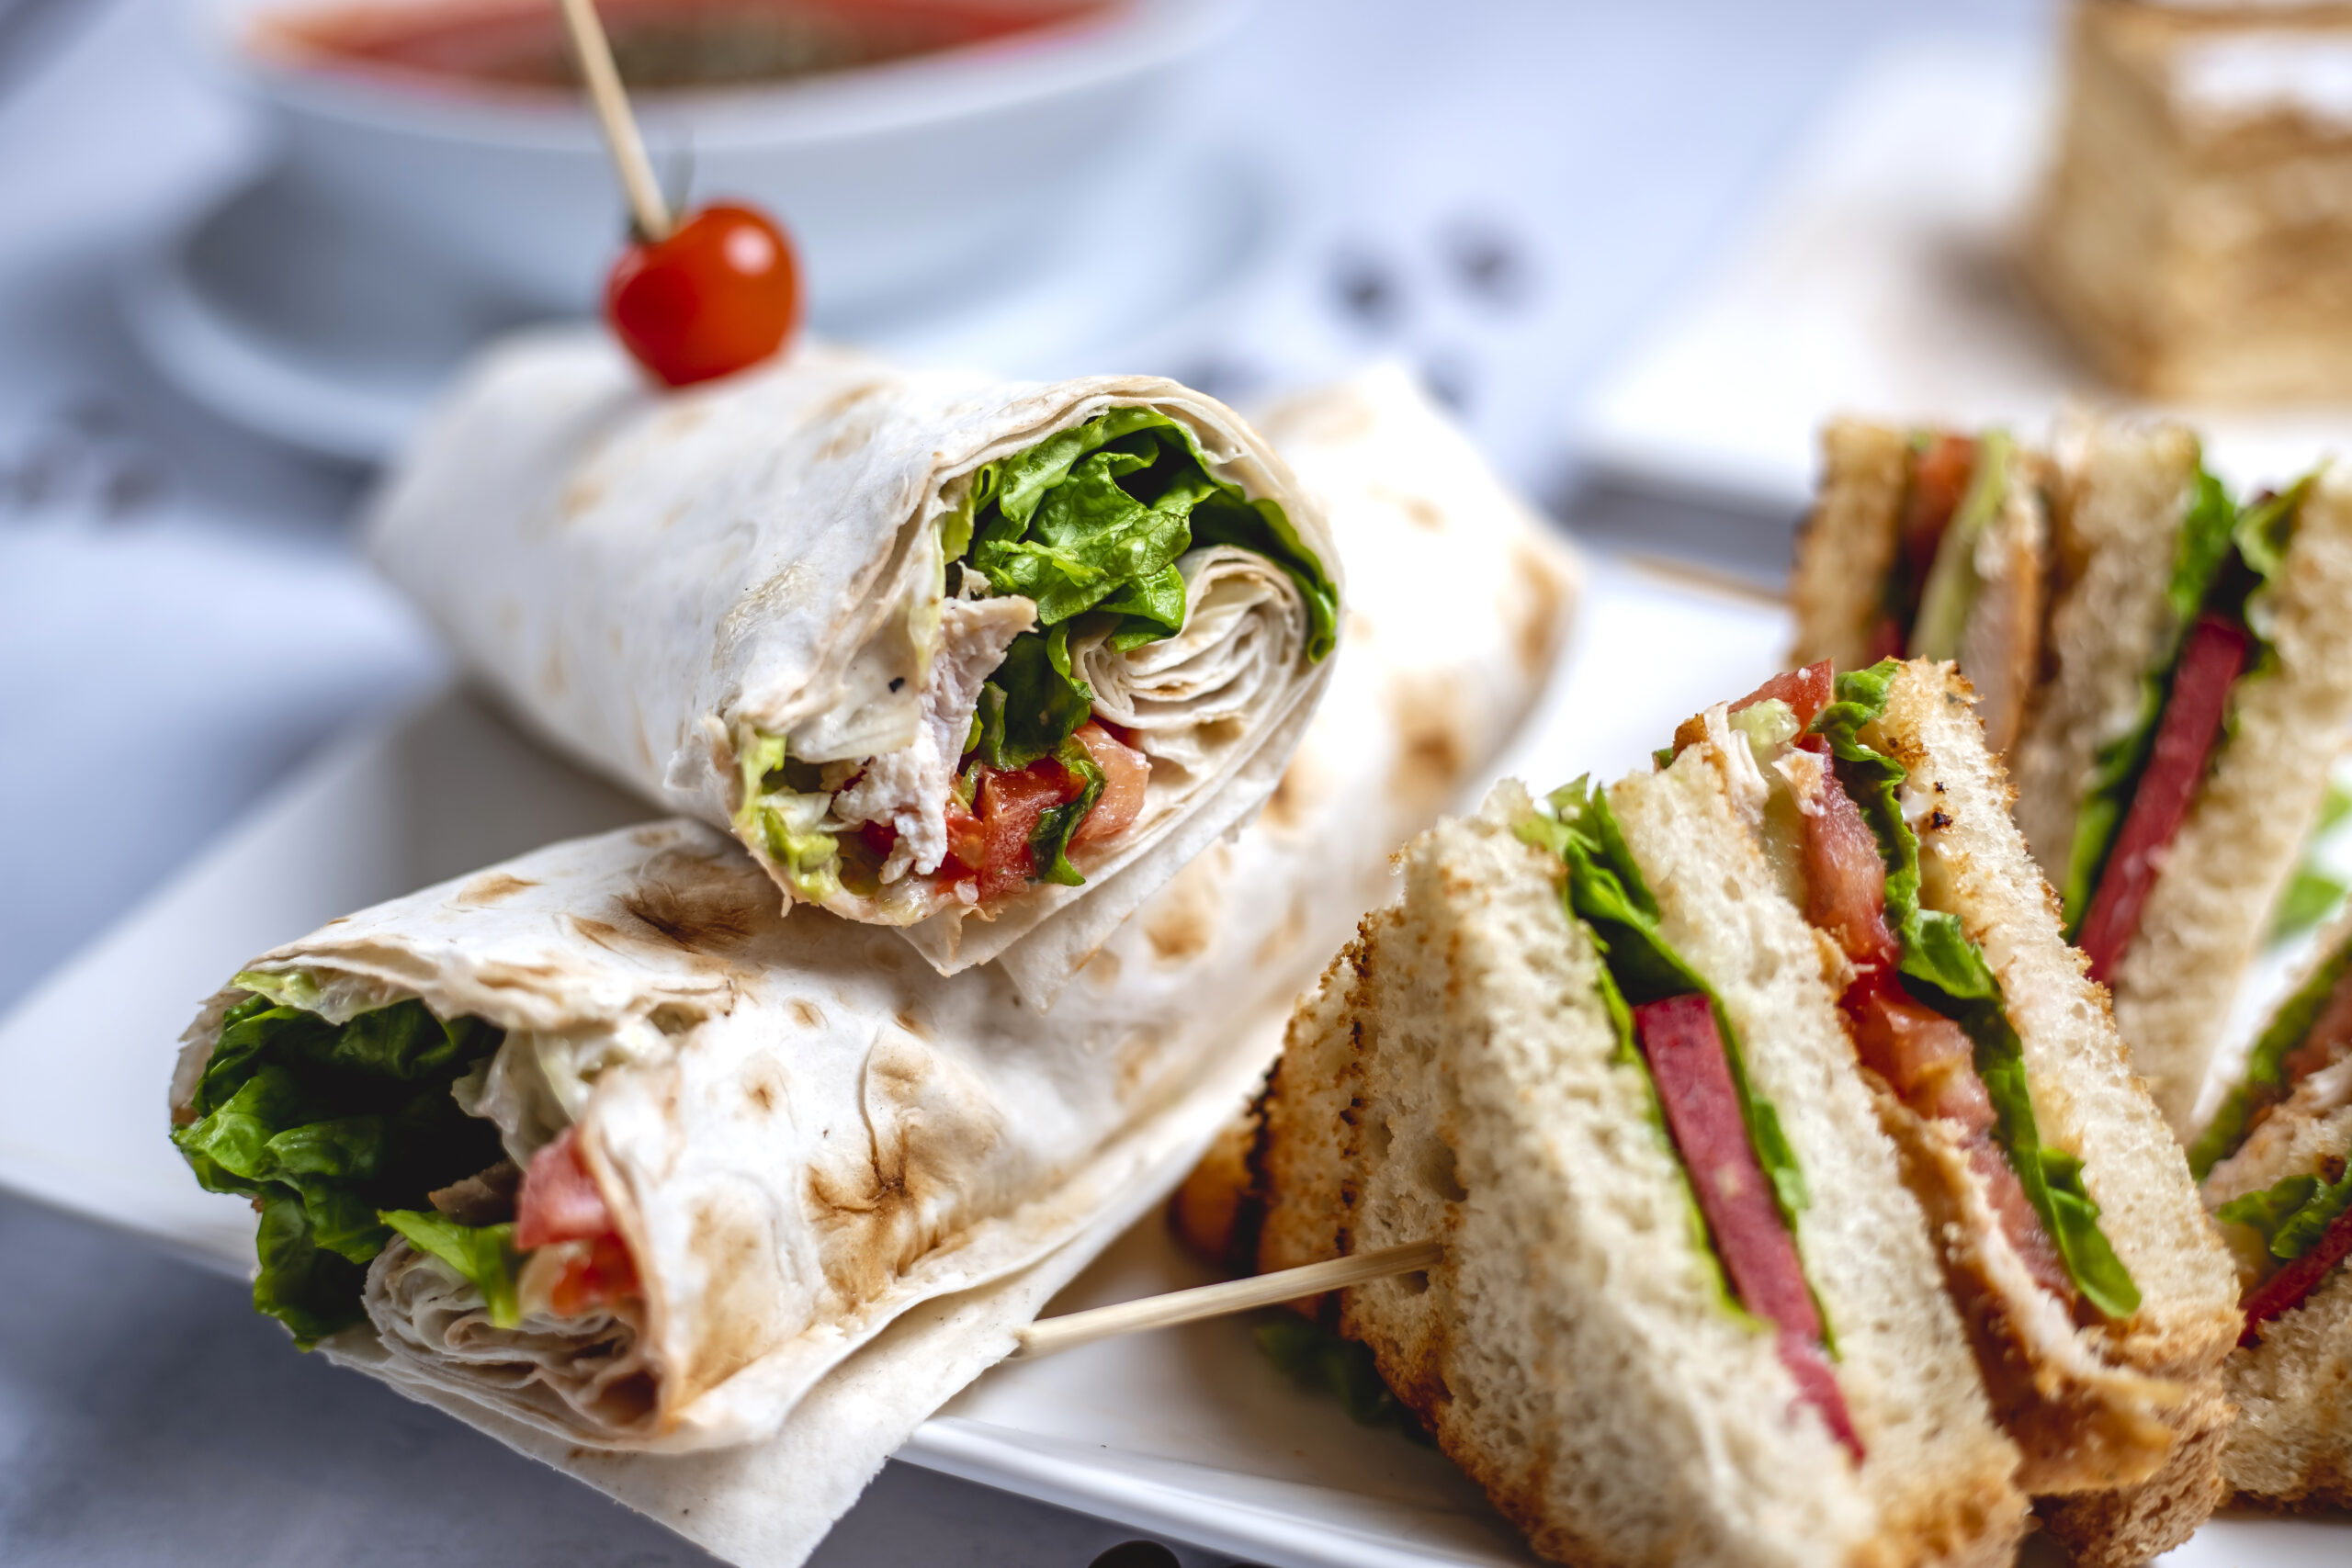 Sveikatai palankių sumuštinių idėja – ne tik studentams: apsidžiaugs norintys sutaupyti